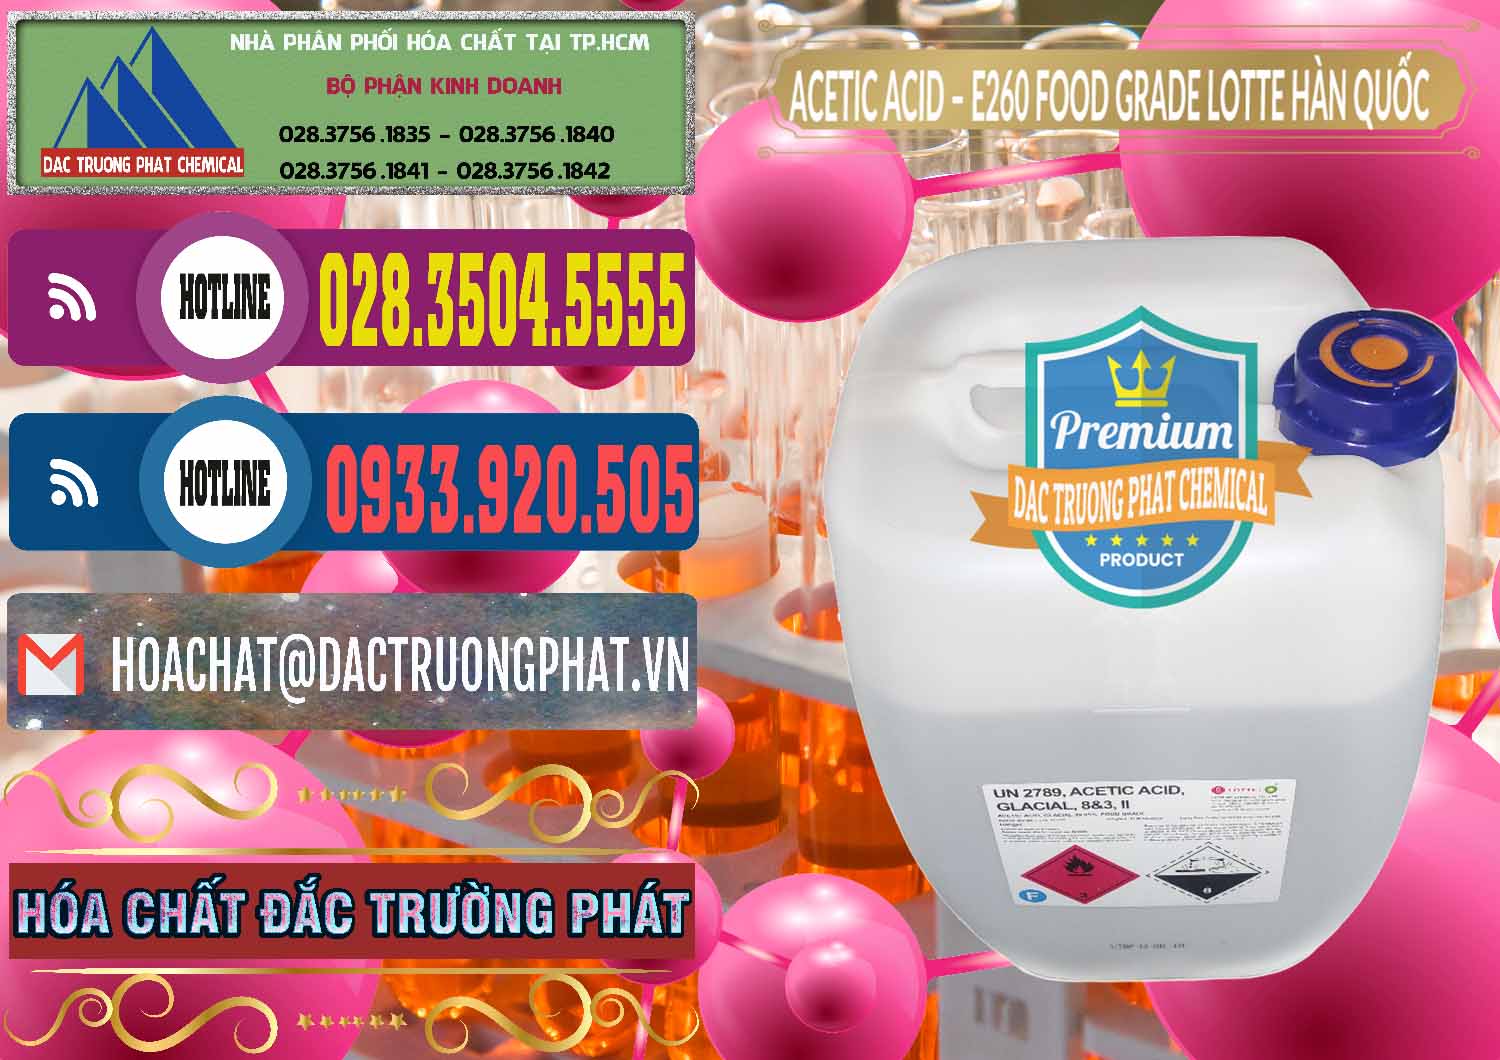 Cty chuyên bán và cung ứng Acetic Acid – Axit Acetic E260 Food Grade Hàn Quốc Lotte Korea - 0003 - Công ty kinh doanh ( cung cấp ) hóa chất tại TP.HCM - muabanhoachat.com.vn